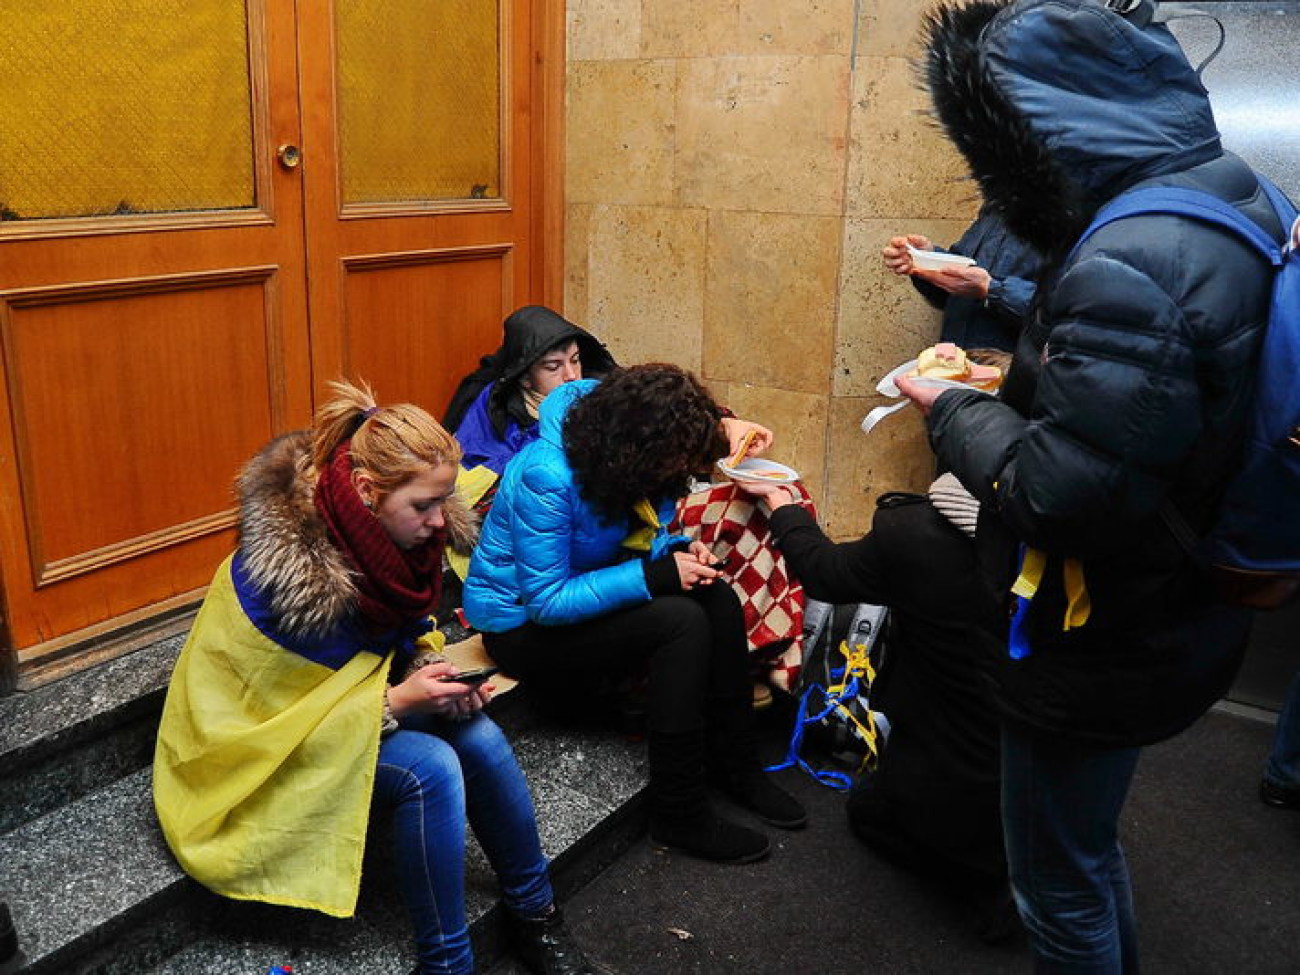 Федерация профсоюзов Украины стала убежищем для революционеров, 2 декабря 2013г.